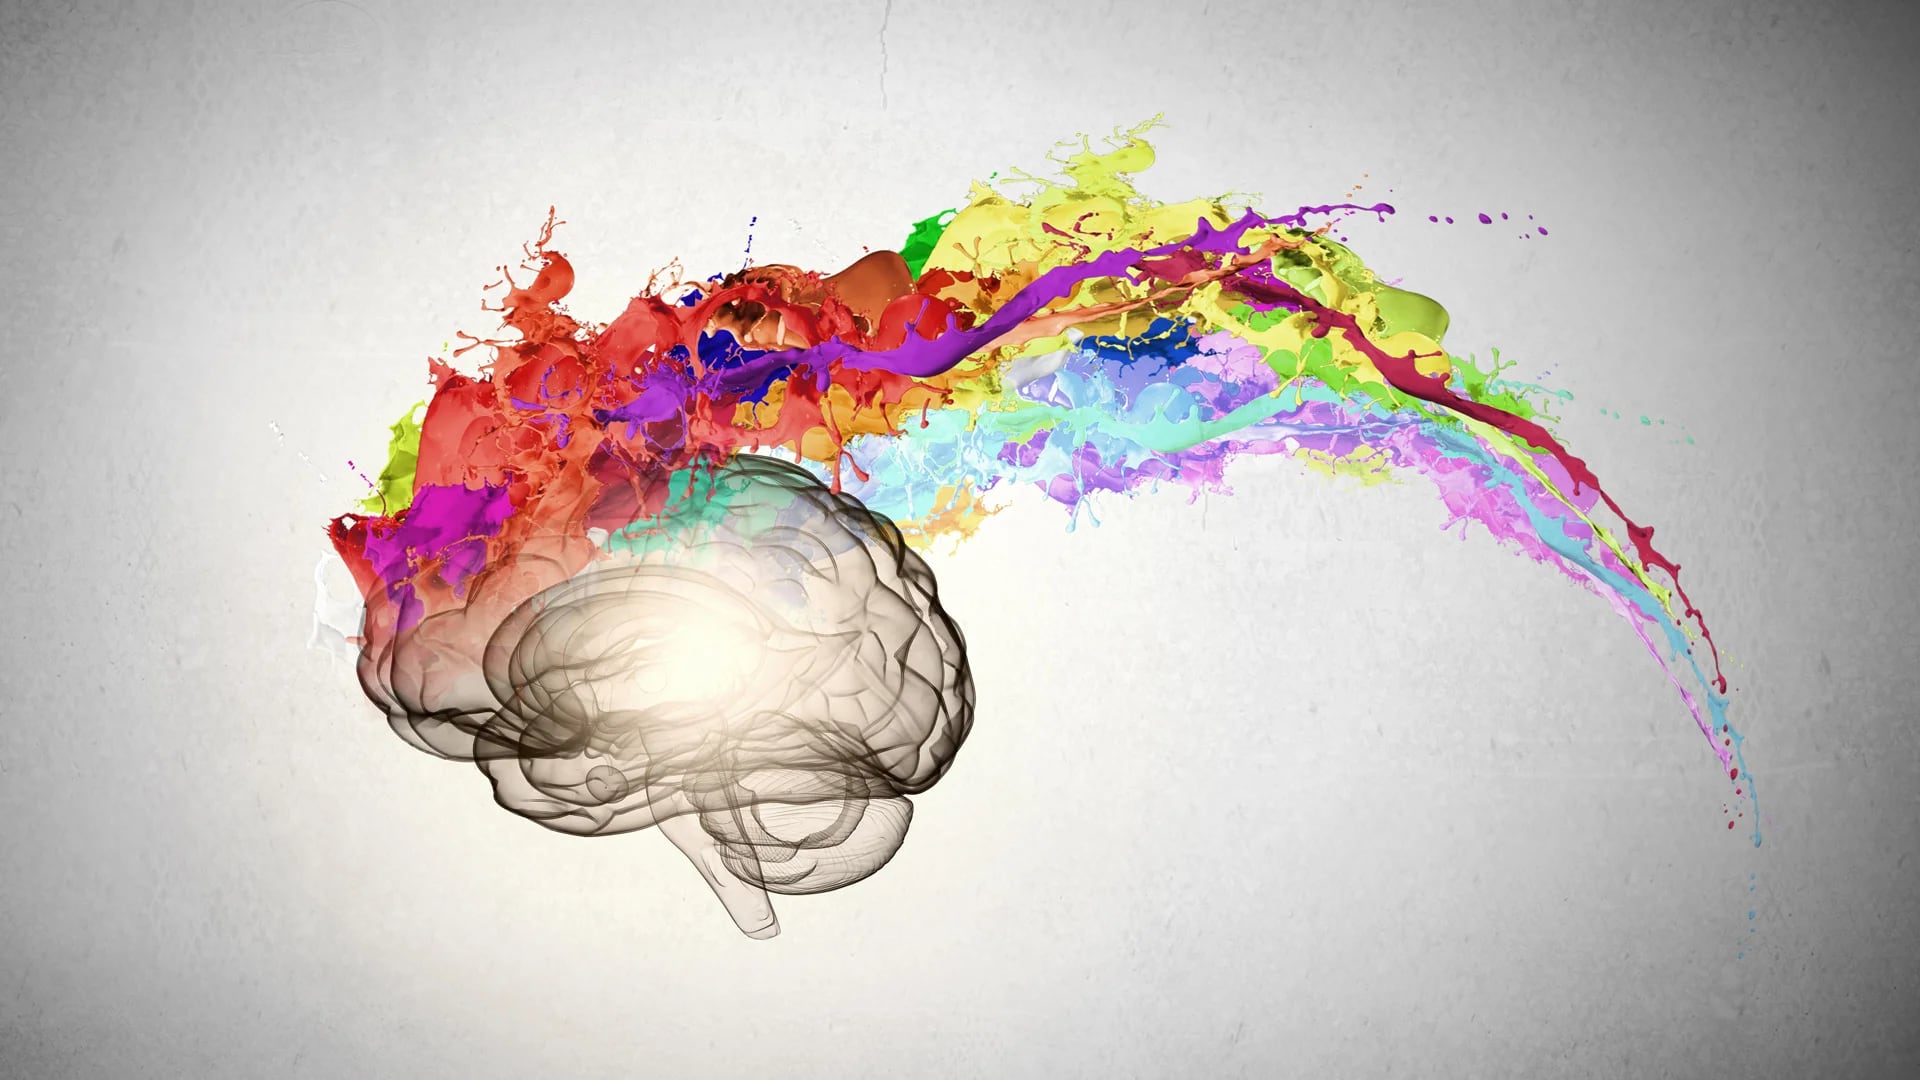 Una de las características principales del cerebro humano consiste en su capacidad para hilar historias (Shutterstock)